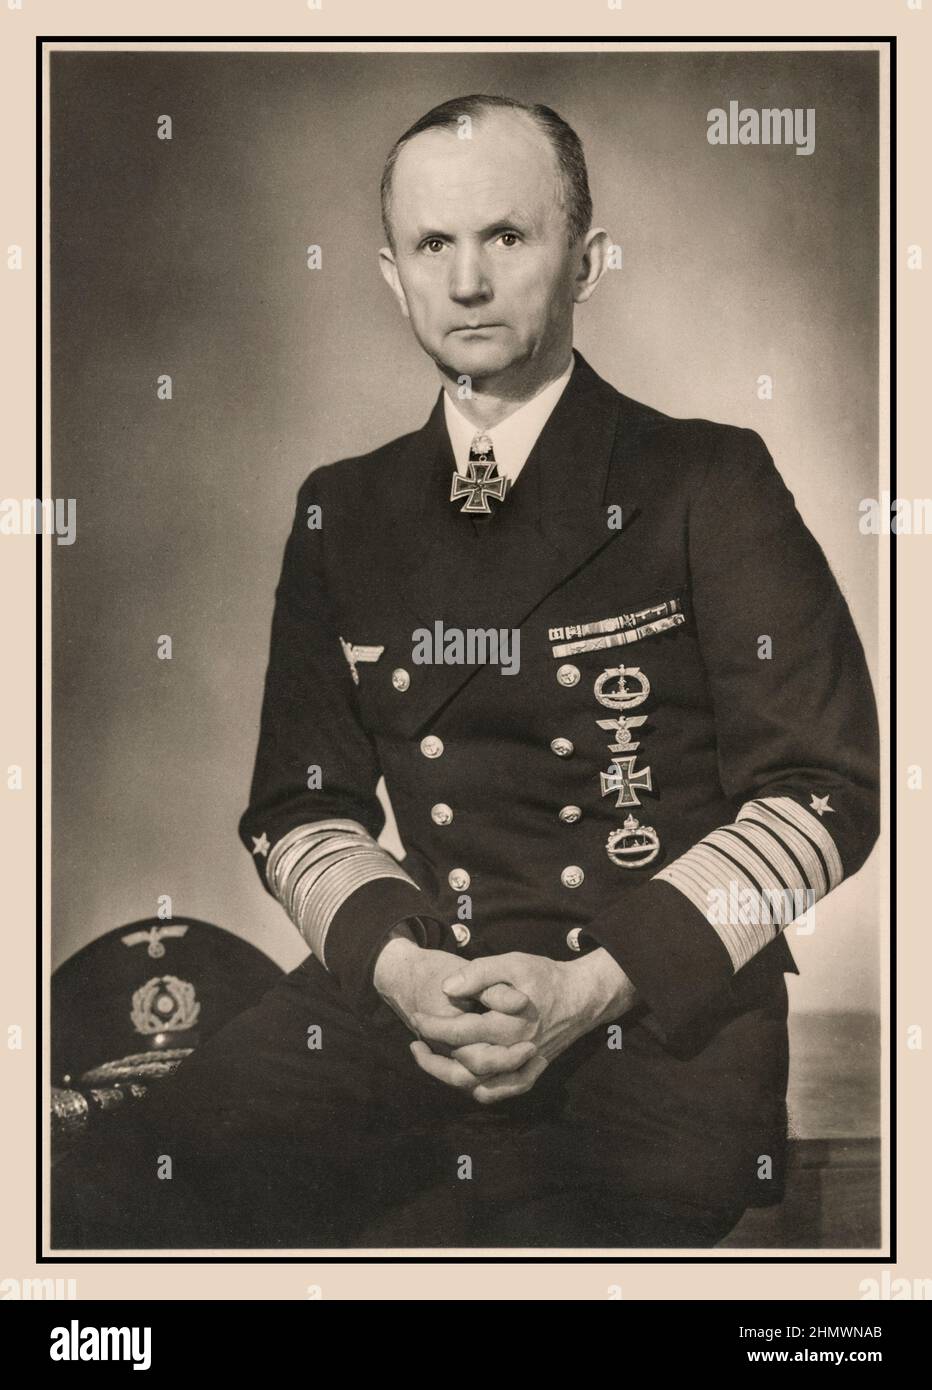 L'amiral Doenitz, studio de propagande nazi officiel de Hoffmann Studios Karl Dönitz était un amiral allemand nazi qui a brièvement succédé à Adolf Hitler comme chef d'État en mai 1945, occupant le poste jusqu'à la dissolution du gouvernement de Flensburg après la capitulation inconditionnelle de l'Allemagne aux alliés quelques jours plus tard. Il n'était pas impliqué dans des crimes de guerre nazis contre l'humanité , mais il a purgé une période d'environ 10 ans de prison et est mort en 1980, Aumühle, Allemagne Banque D'Images